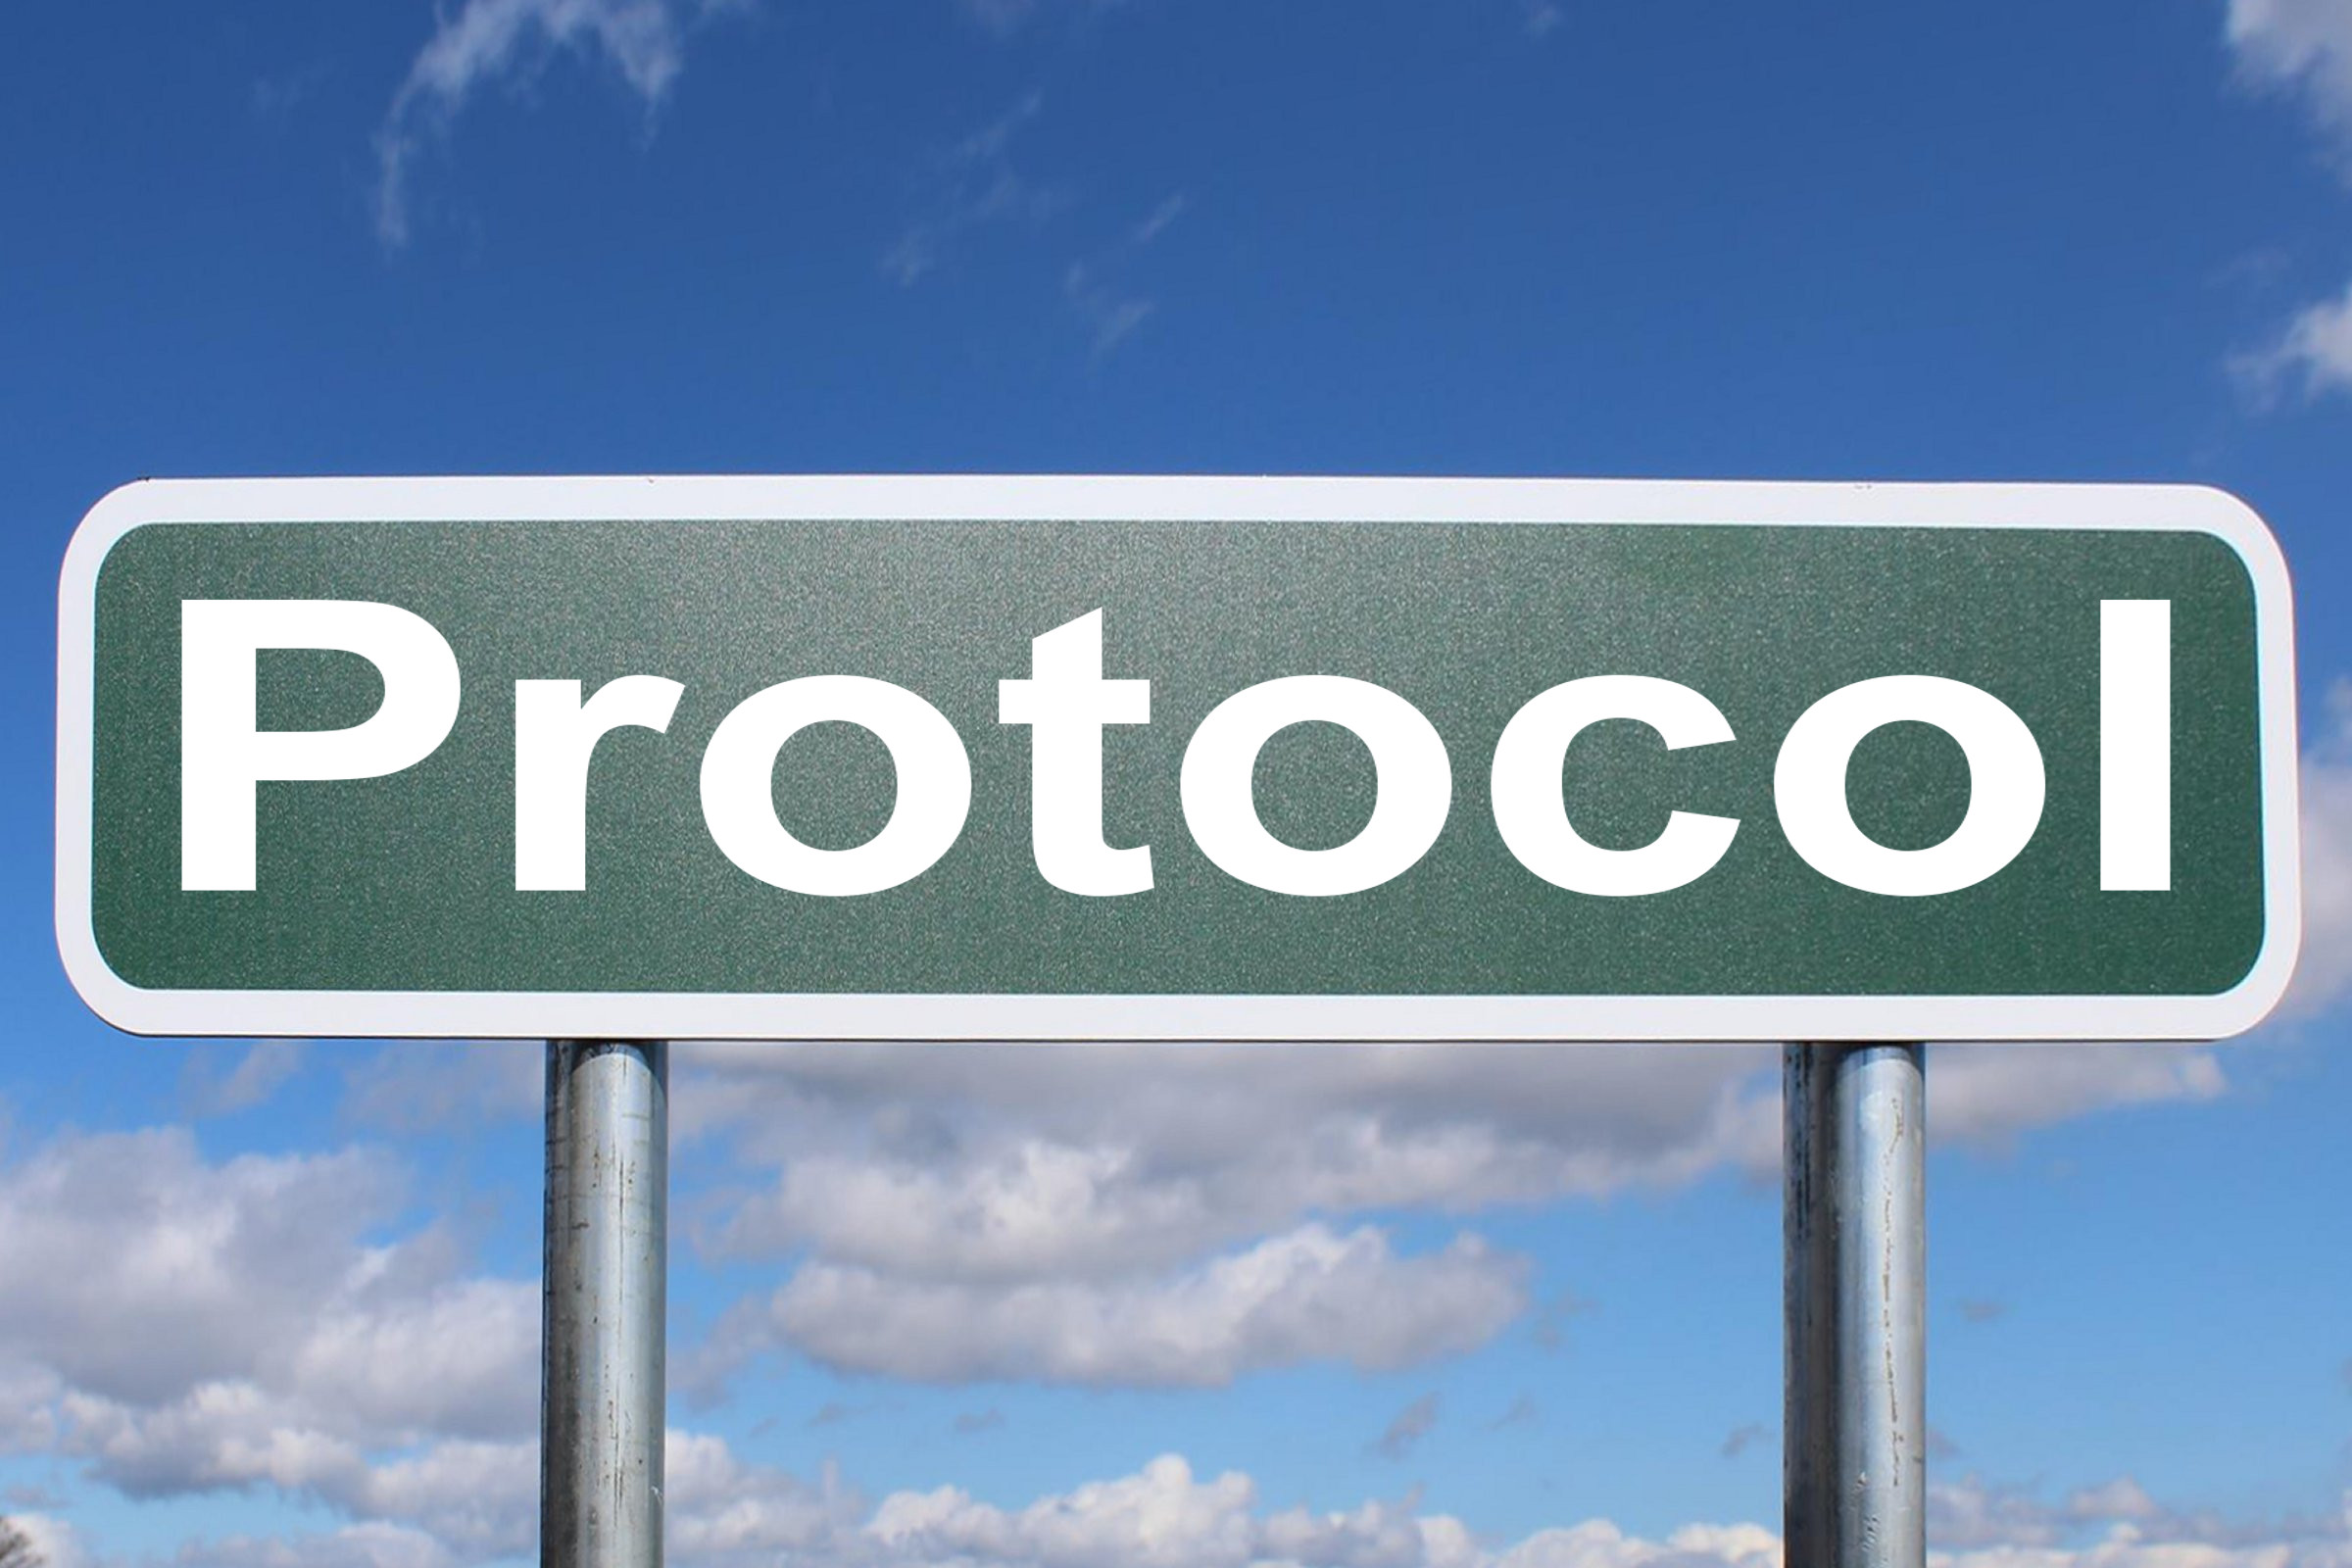 protocol